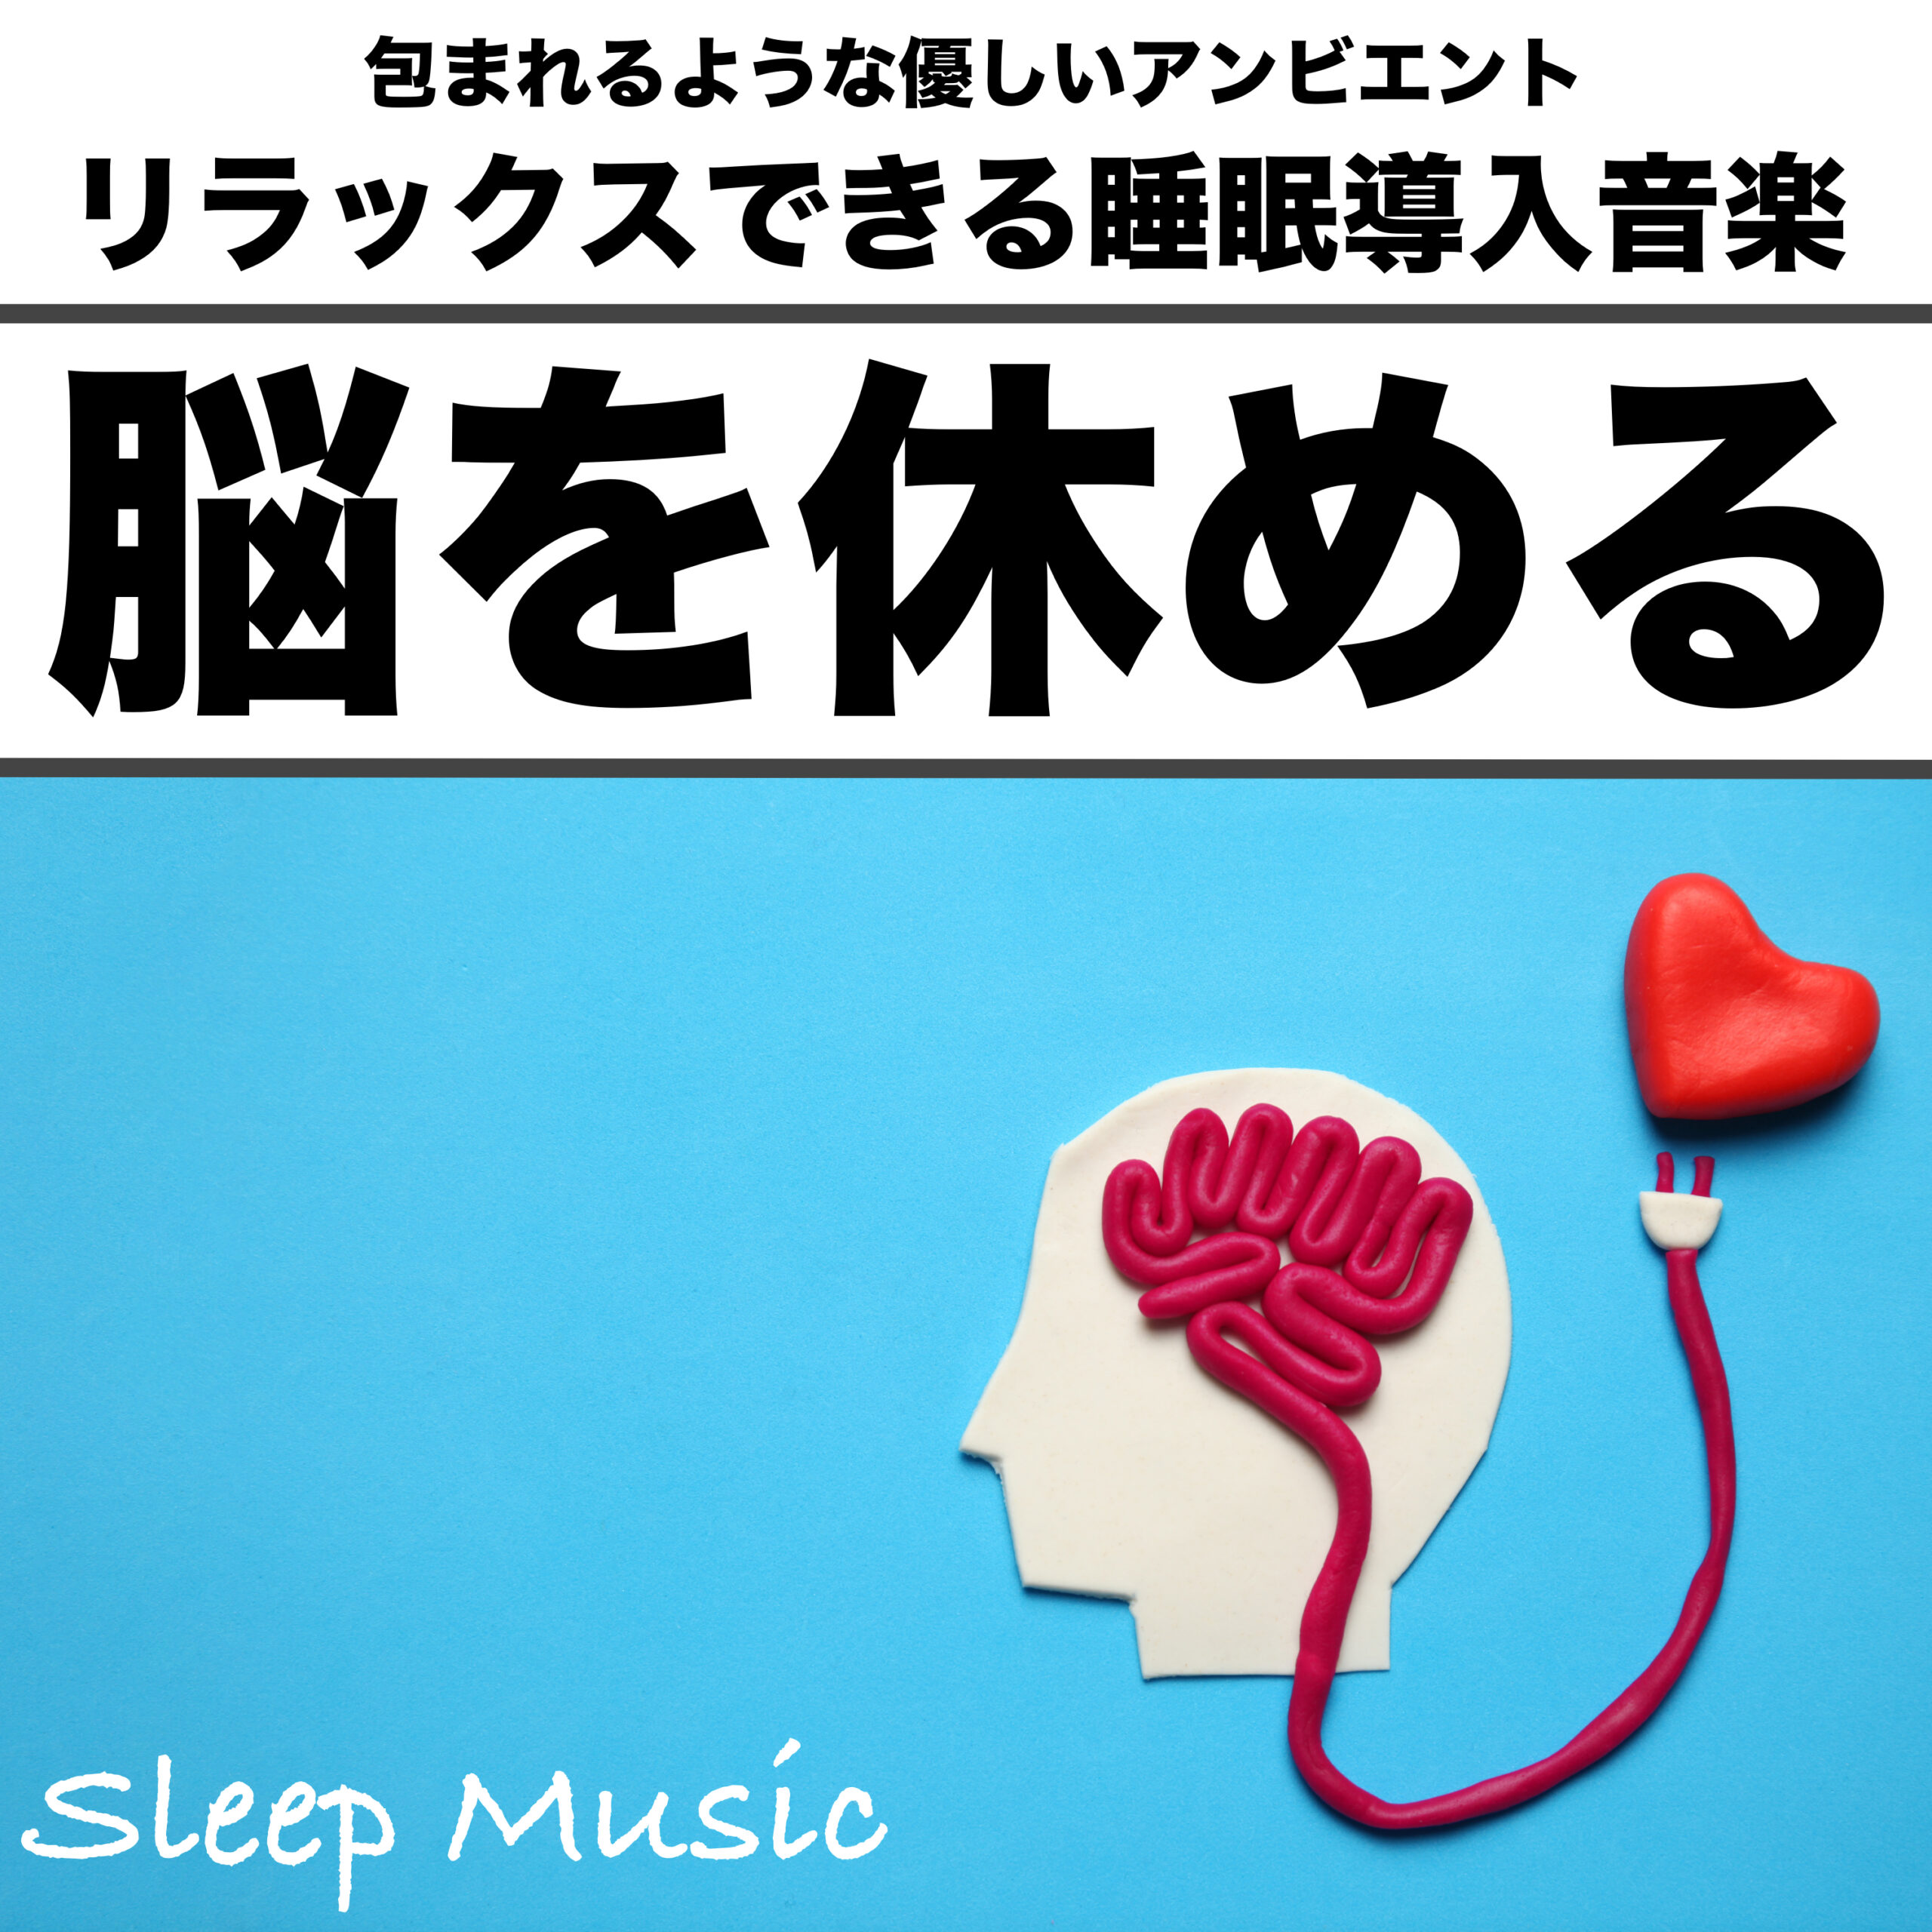 包まれるような優しいアンビエント  リラックスできる睡眠導入音楽 脳を休める Sleep Music